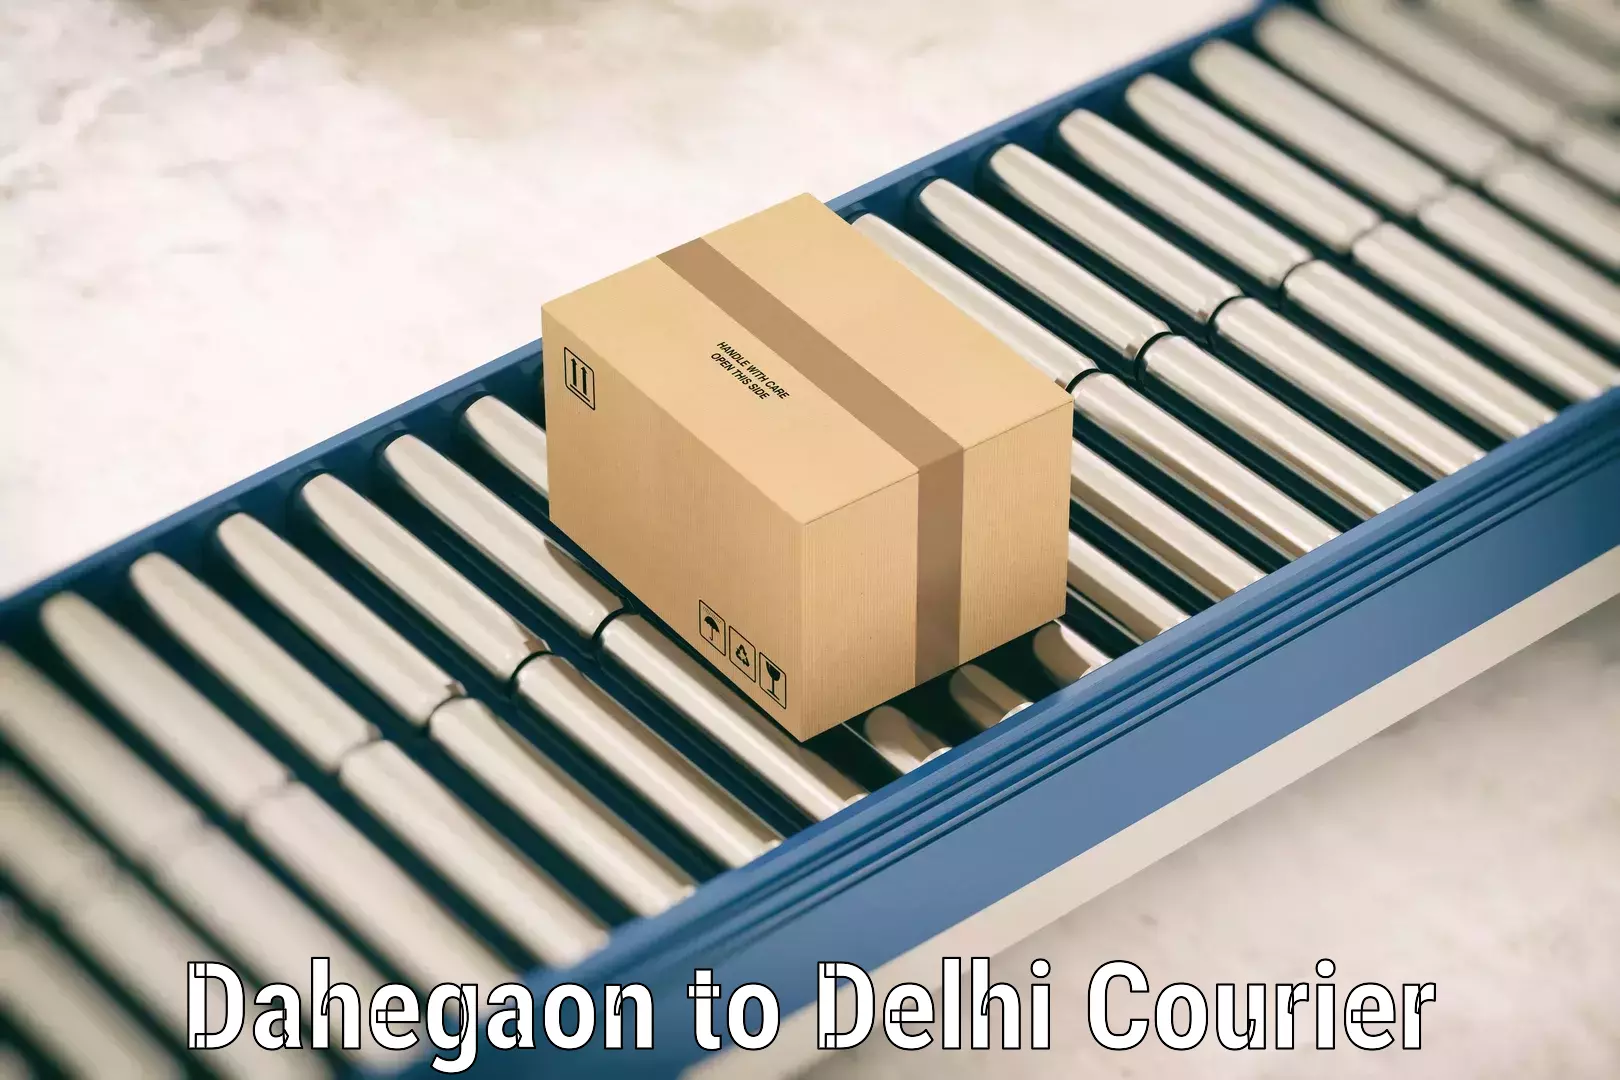 Luggage shipment tracking Dahegaon to Delhi